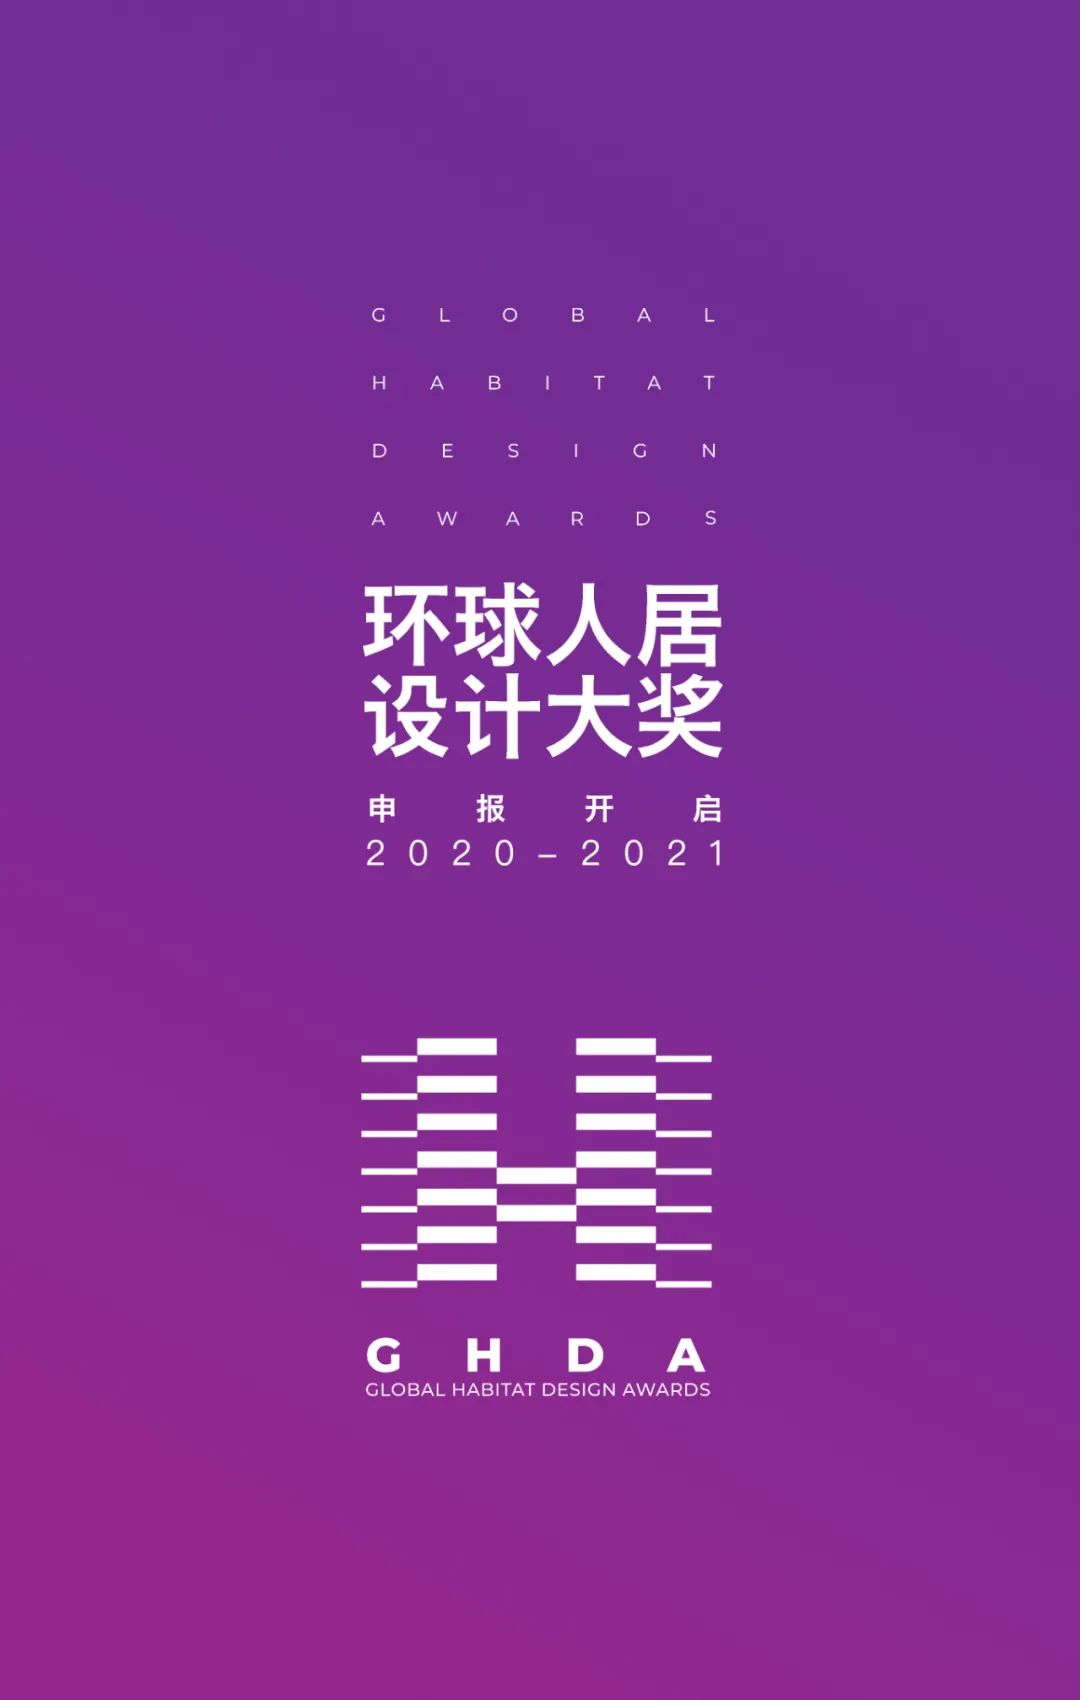 全领域设计赛事盛宴|GHDA环球人居设计大奖第二轮申报开启